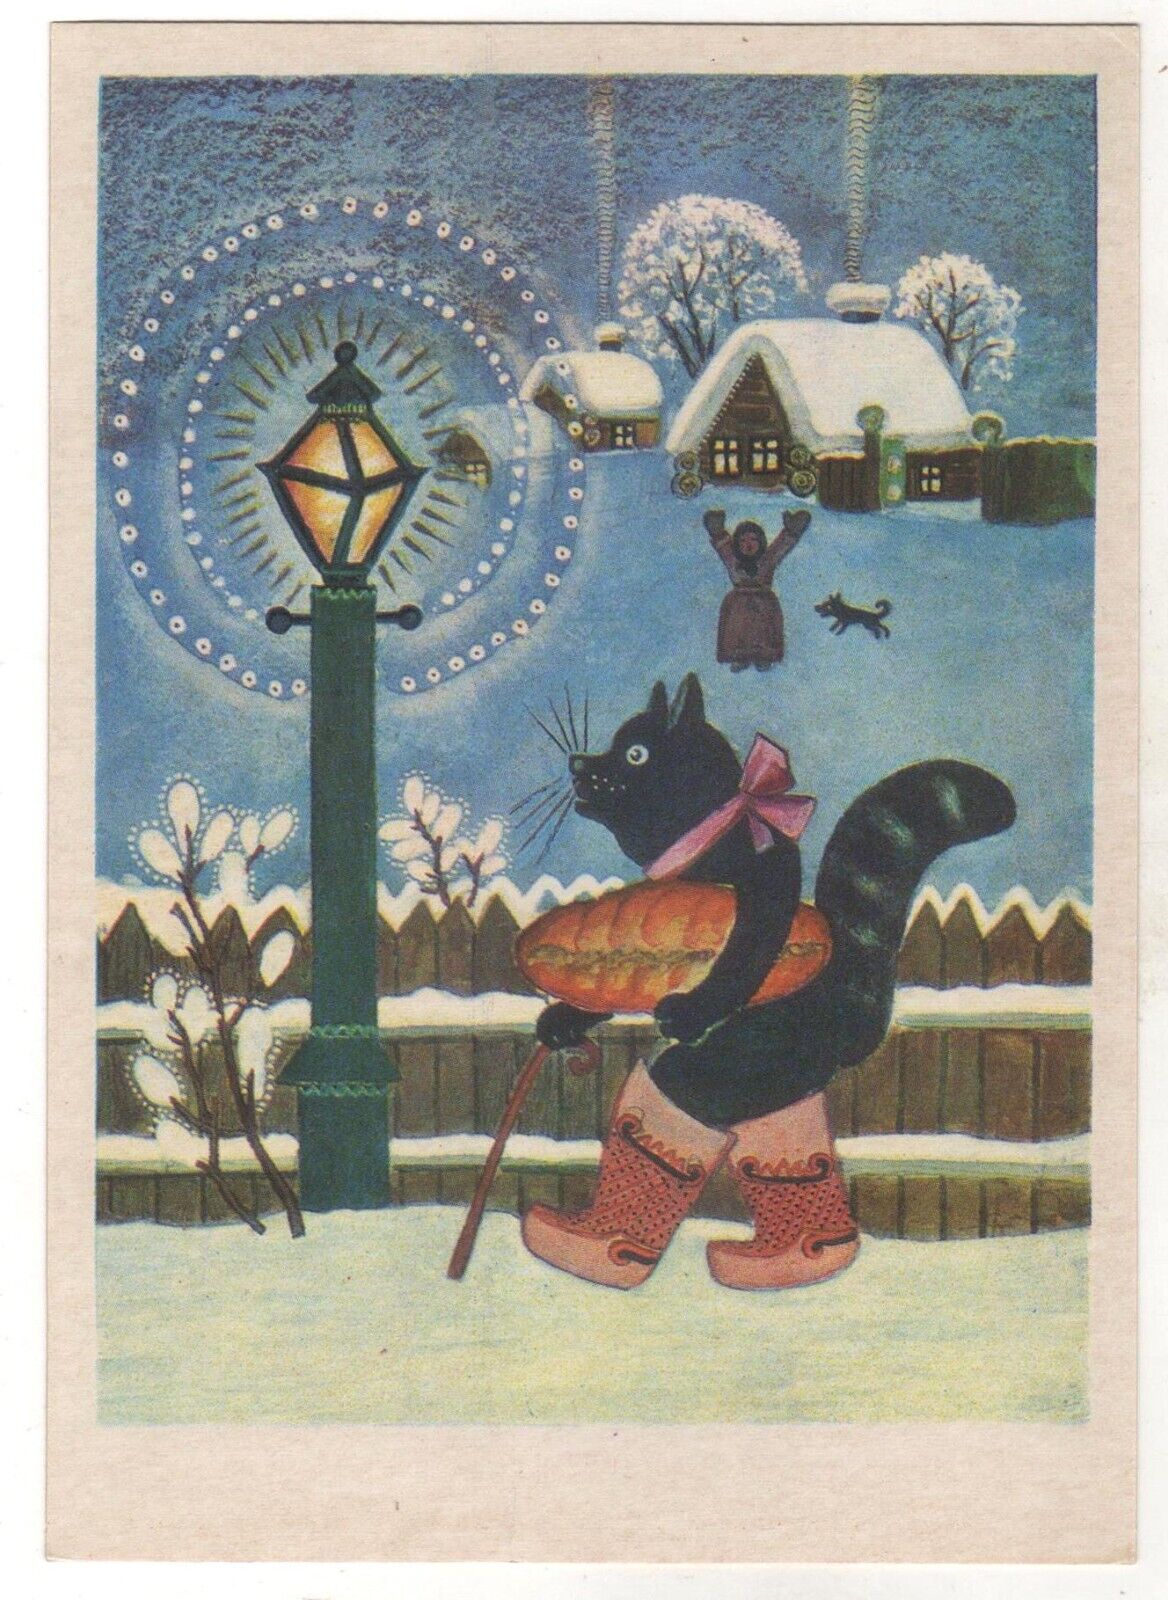 1970 Fairy Tale ill. Сat went to the market ART VASNETSOV Soviet POSTCARD Old